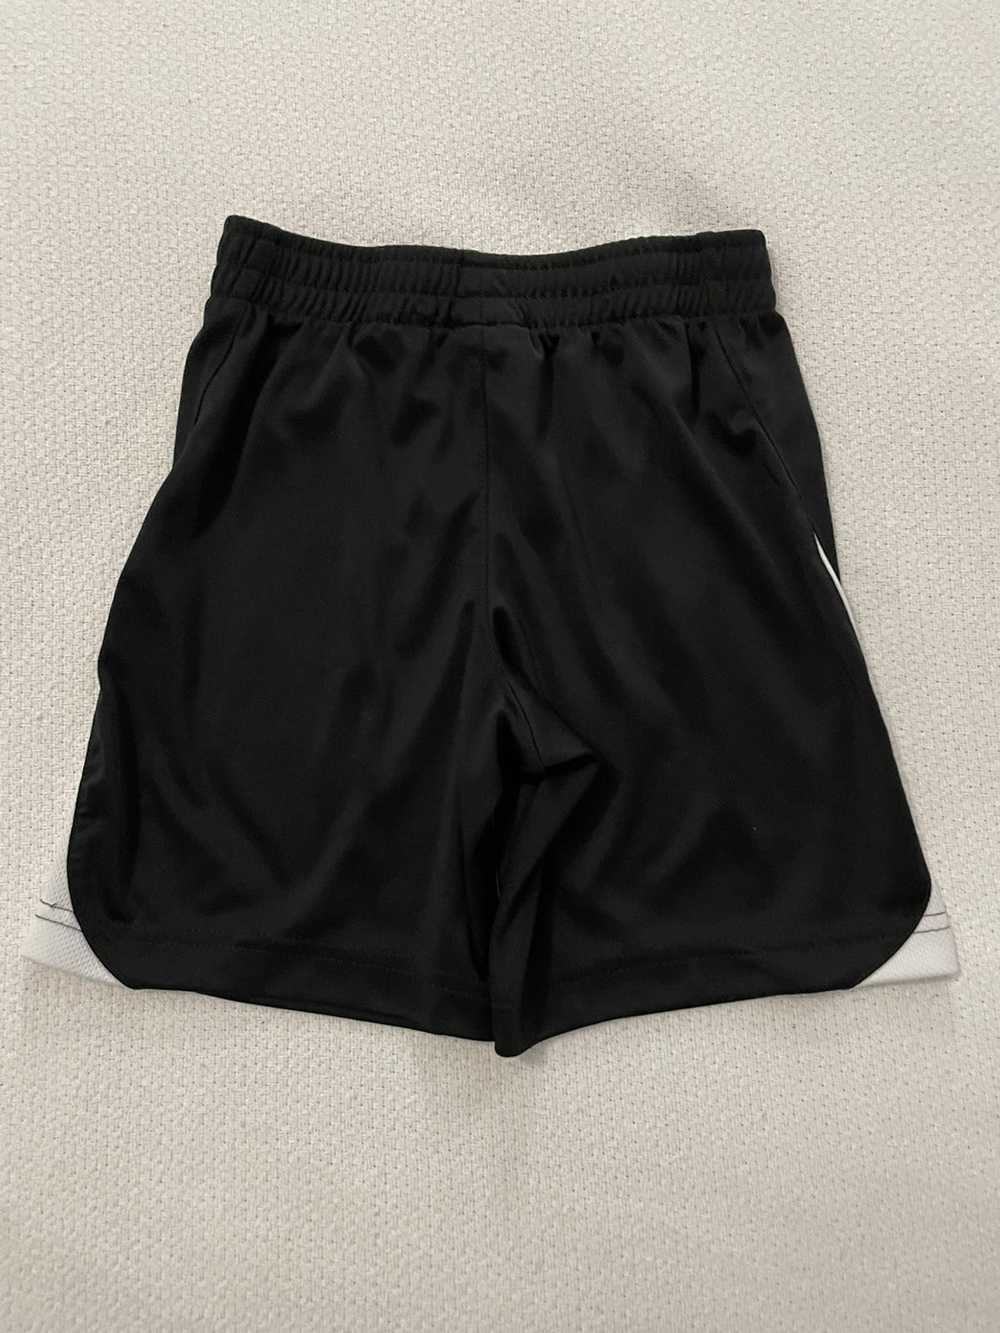 Nike Nike Shorts - Boys Size 5T - image 2